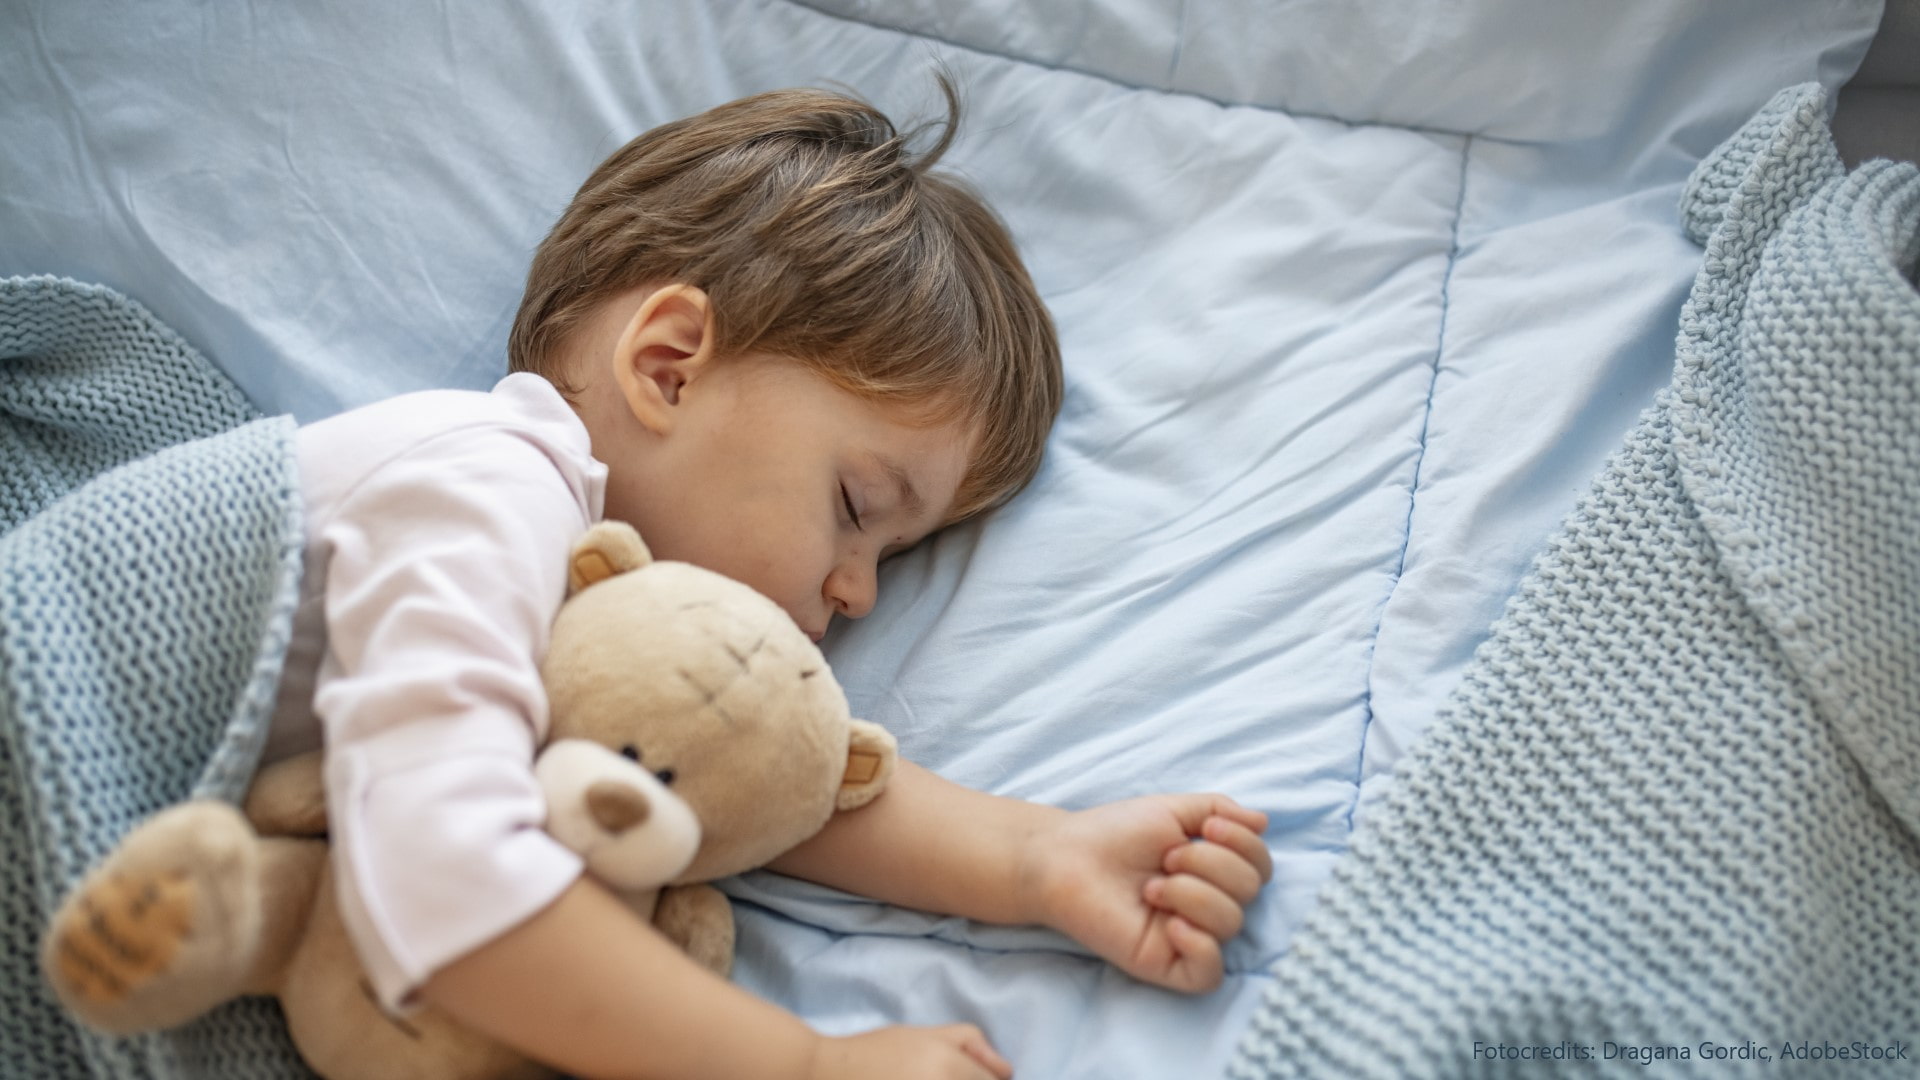 Ab wann sollten Kinder im eigenen Bett schlafen